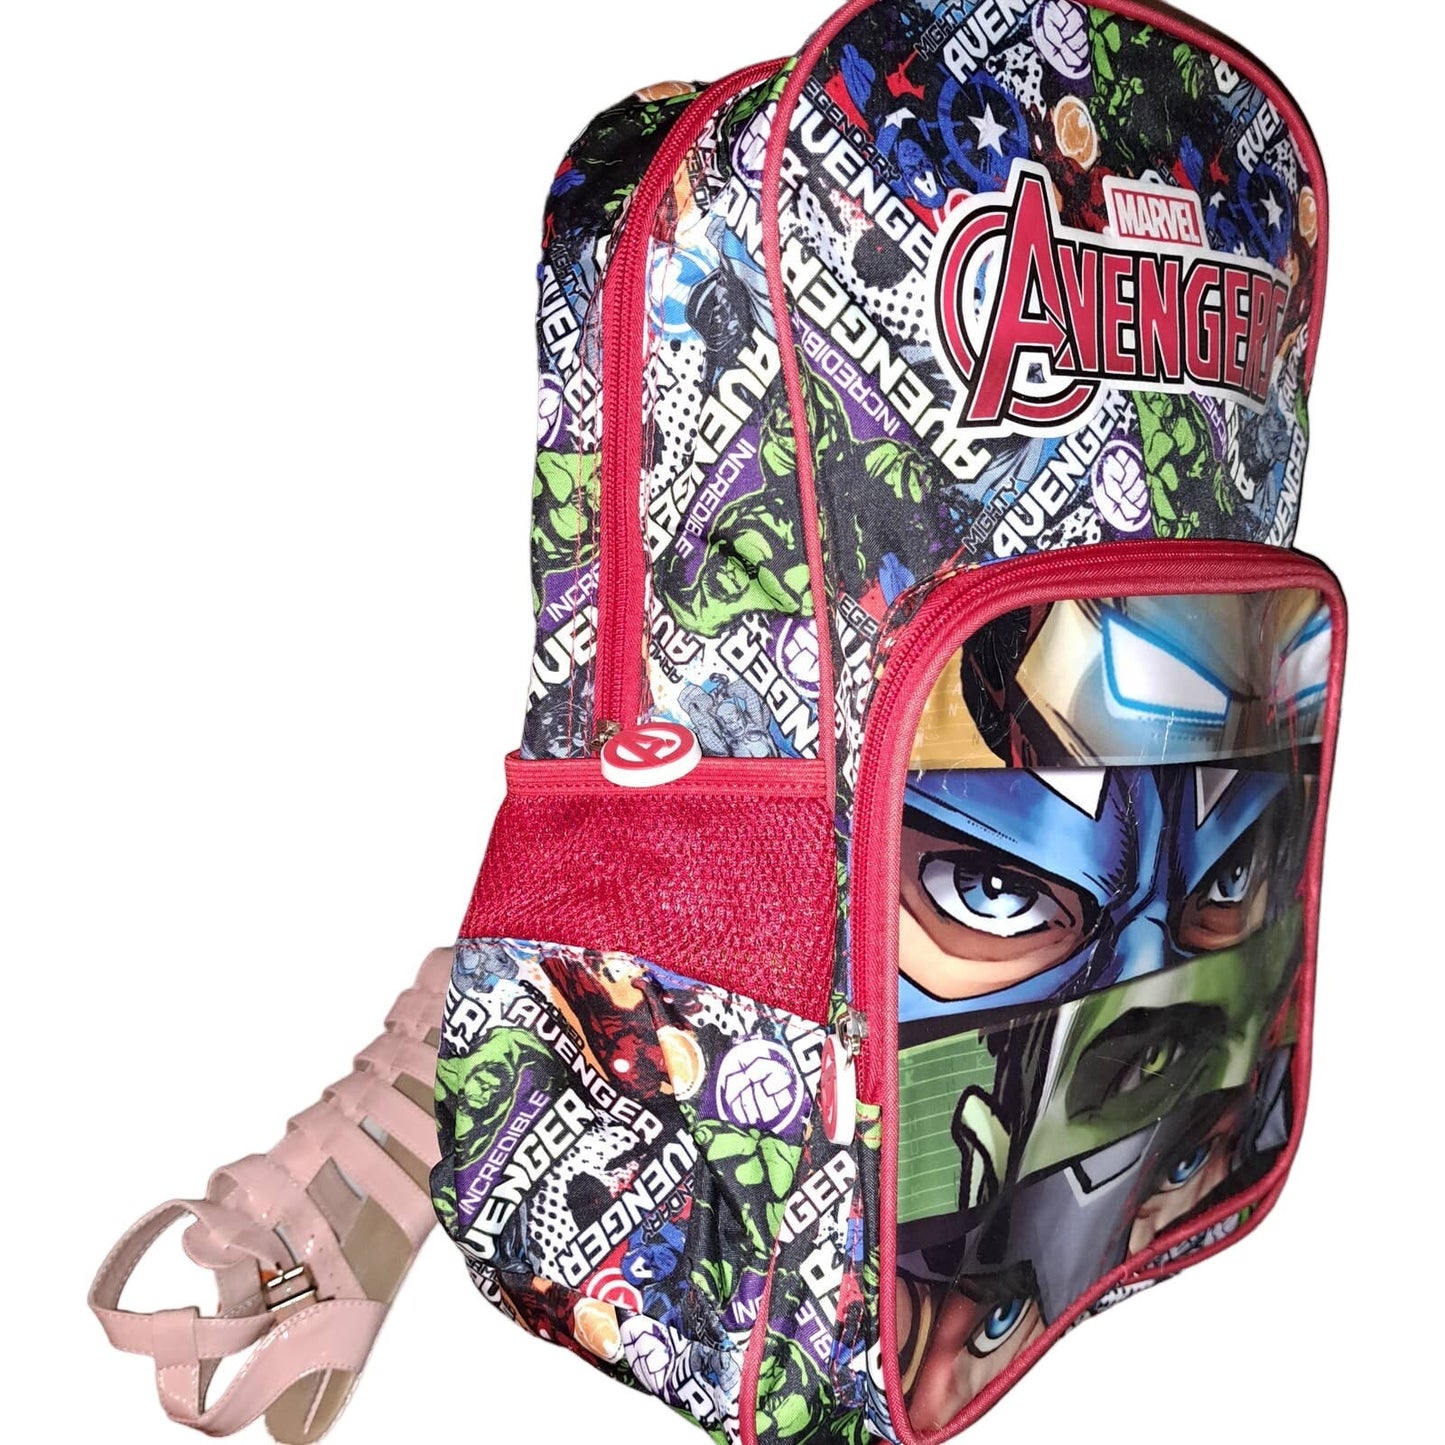 SALE!!! NWT - MARVEL Avengers full size Backpack